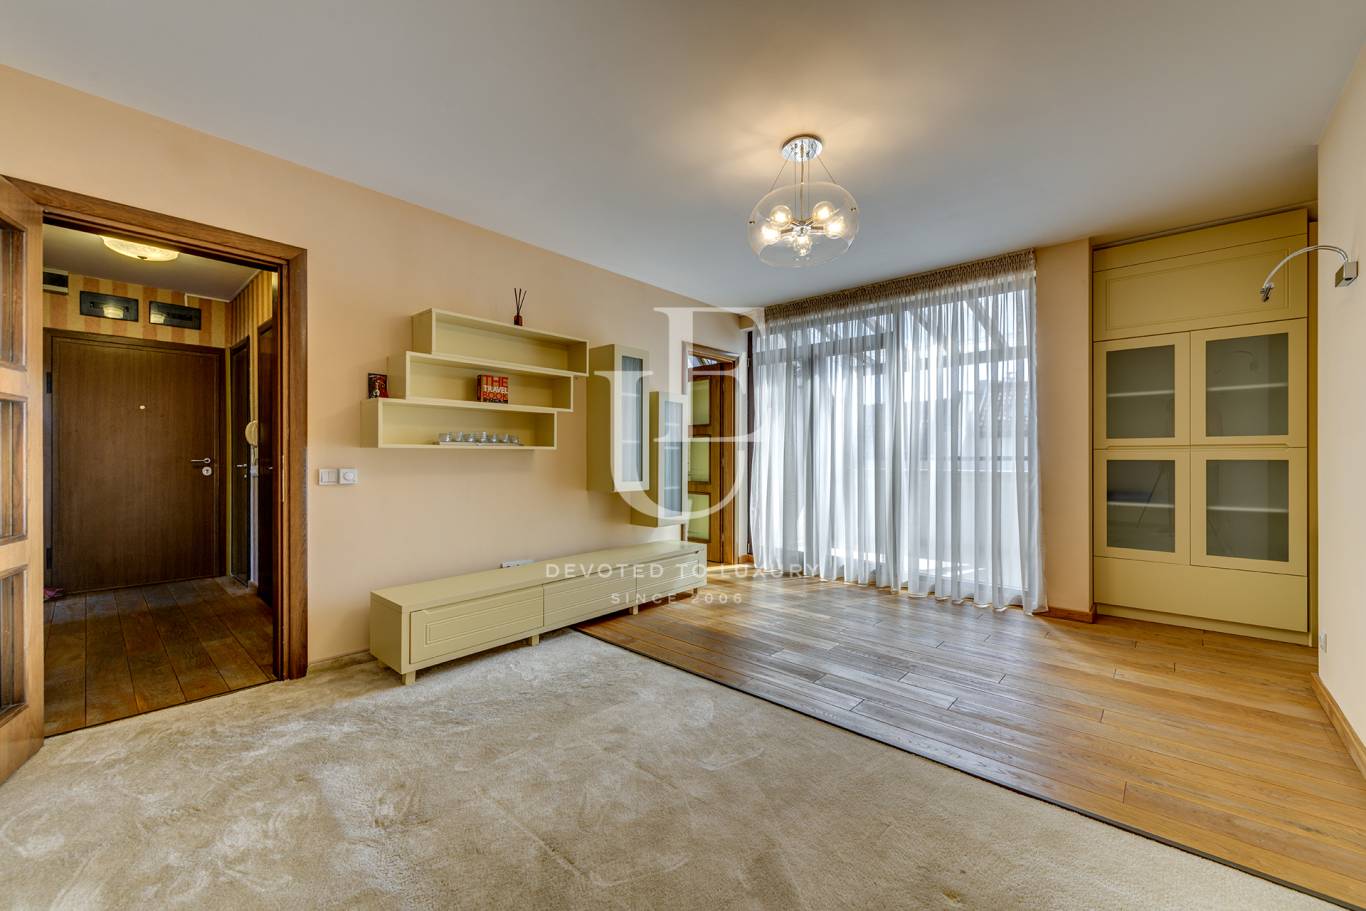 Апартамент под наем в София, Панчарево - код на имота: N20930 - image 2